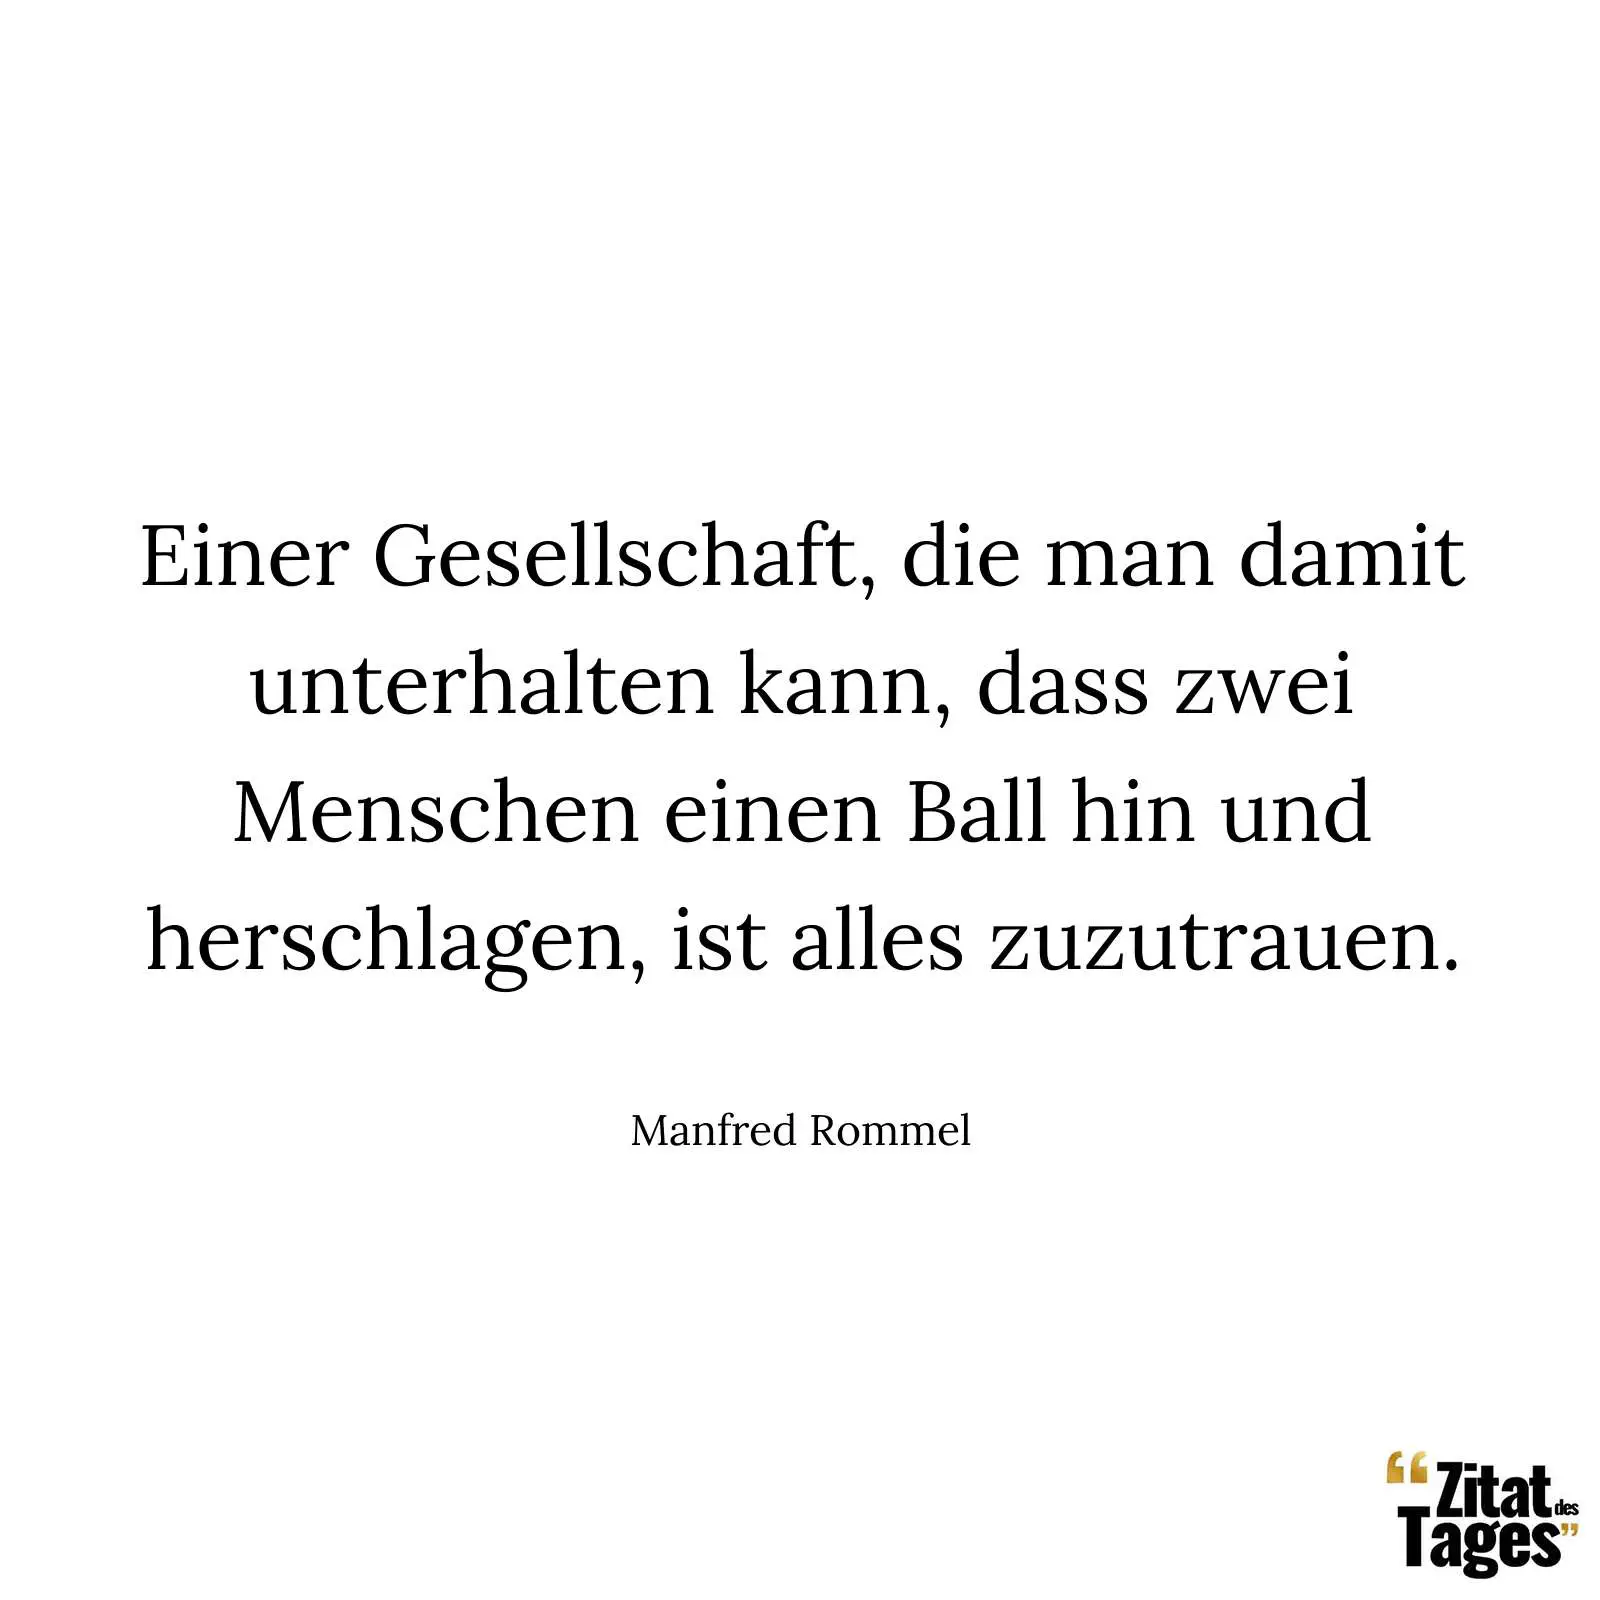 Einer Gesellschaft, die man damit unterhalten kann, dass zwei Menschen einen Ball hin und herschlagen, ist alles zuzutrauen. - Manfred Rommel